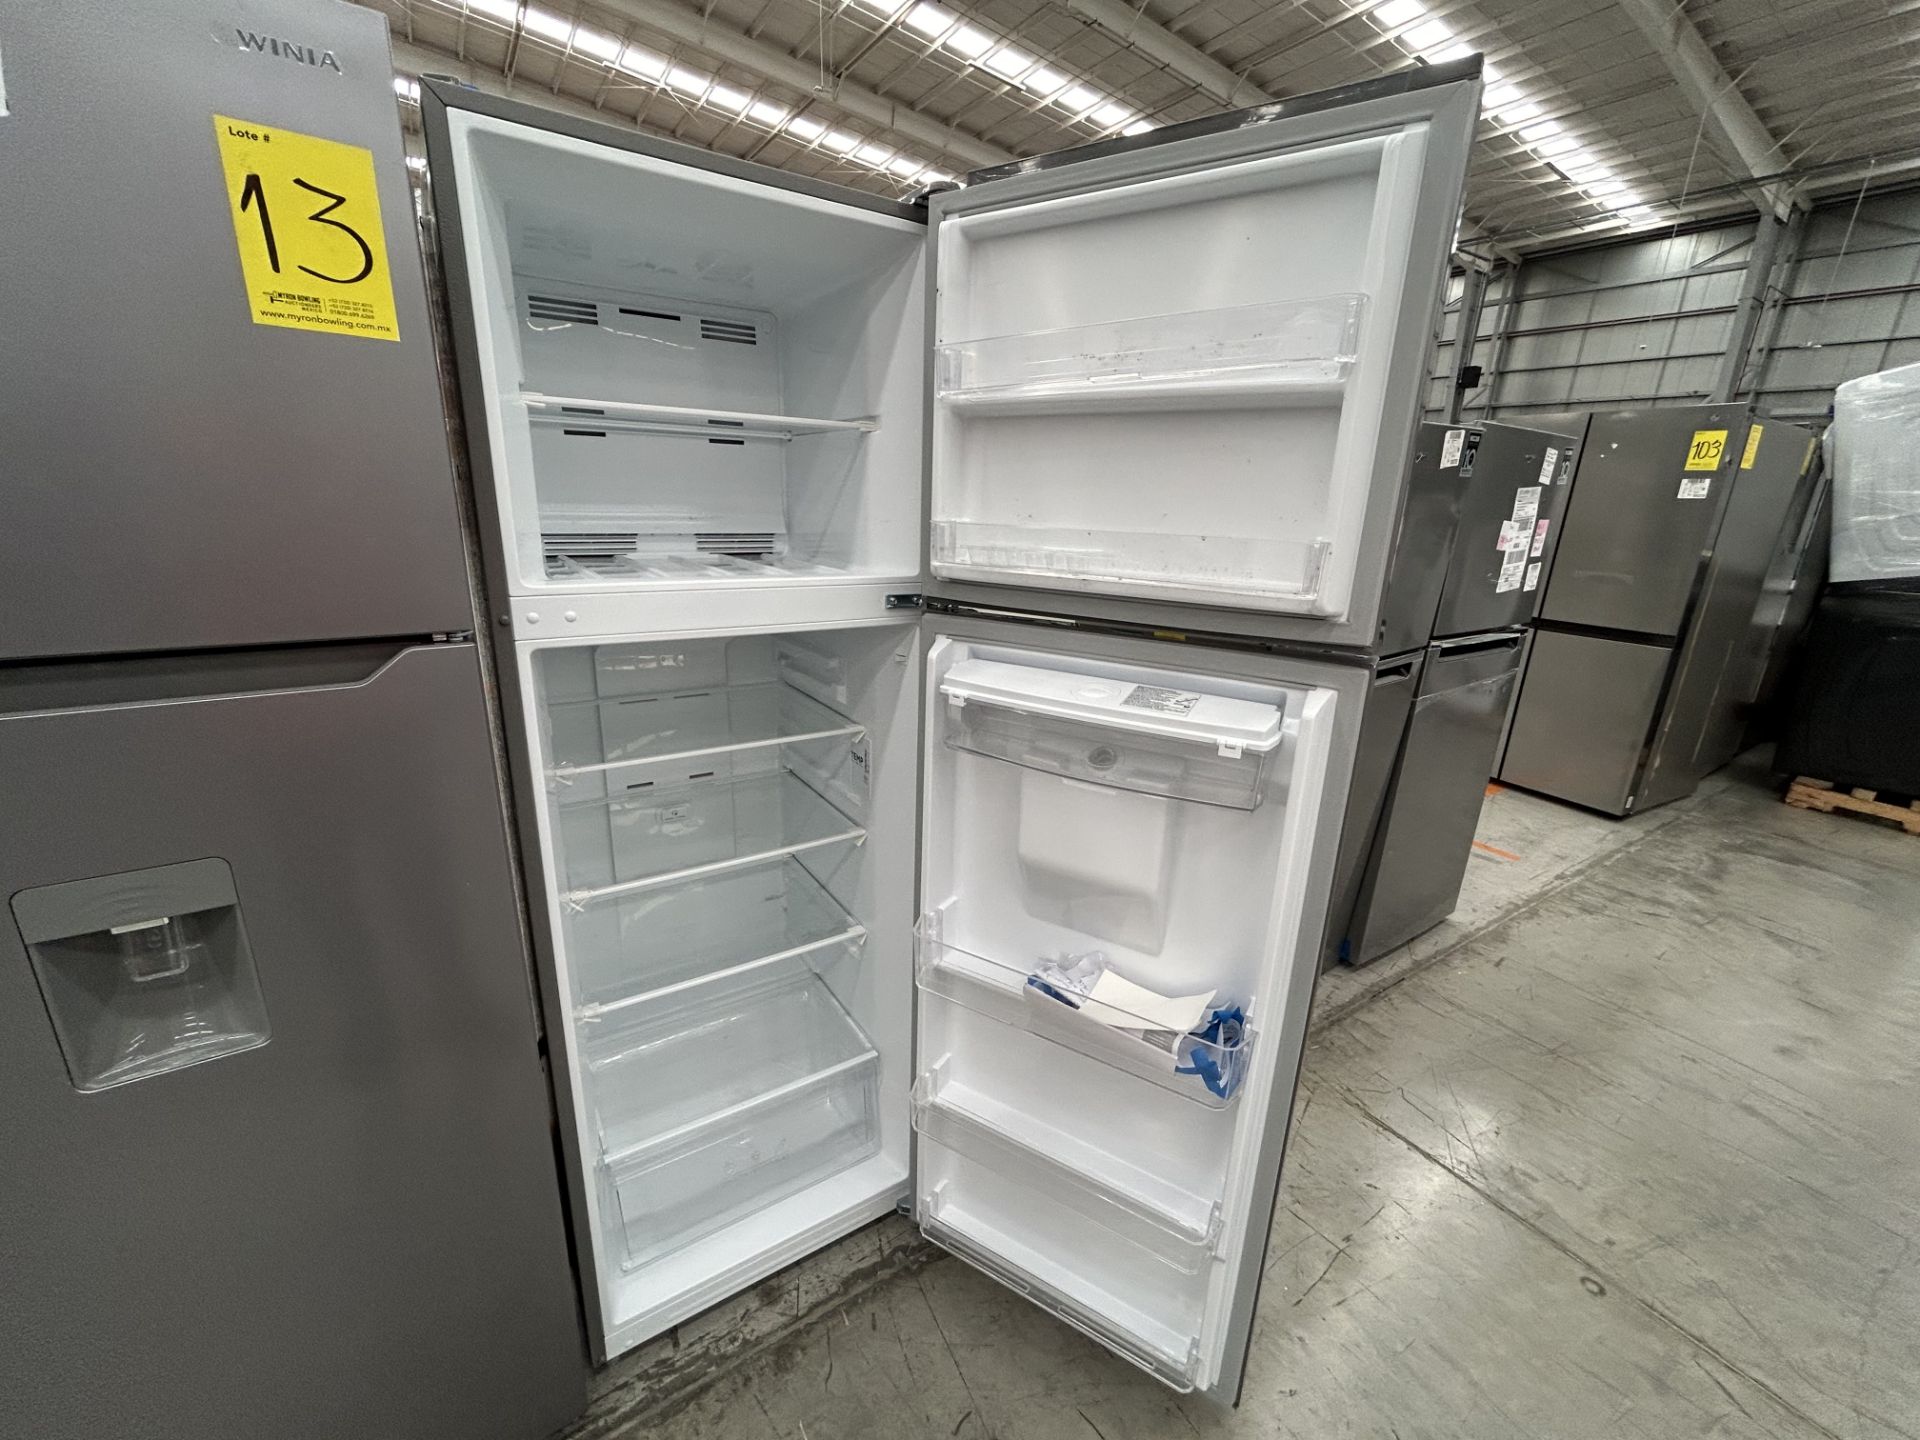 Lote de 2 Refrigeradores contiene: 1 Refrigerador con dispensador de agua Marca WINIA, Modelo WRT12 - Image 4 of 6